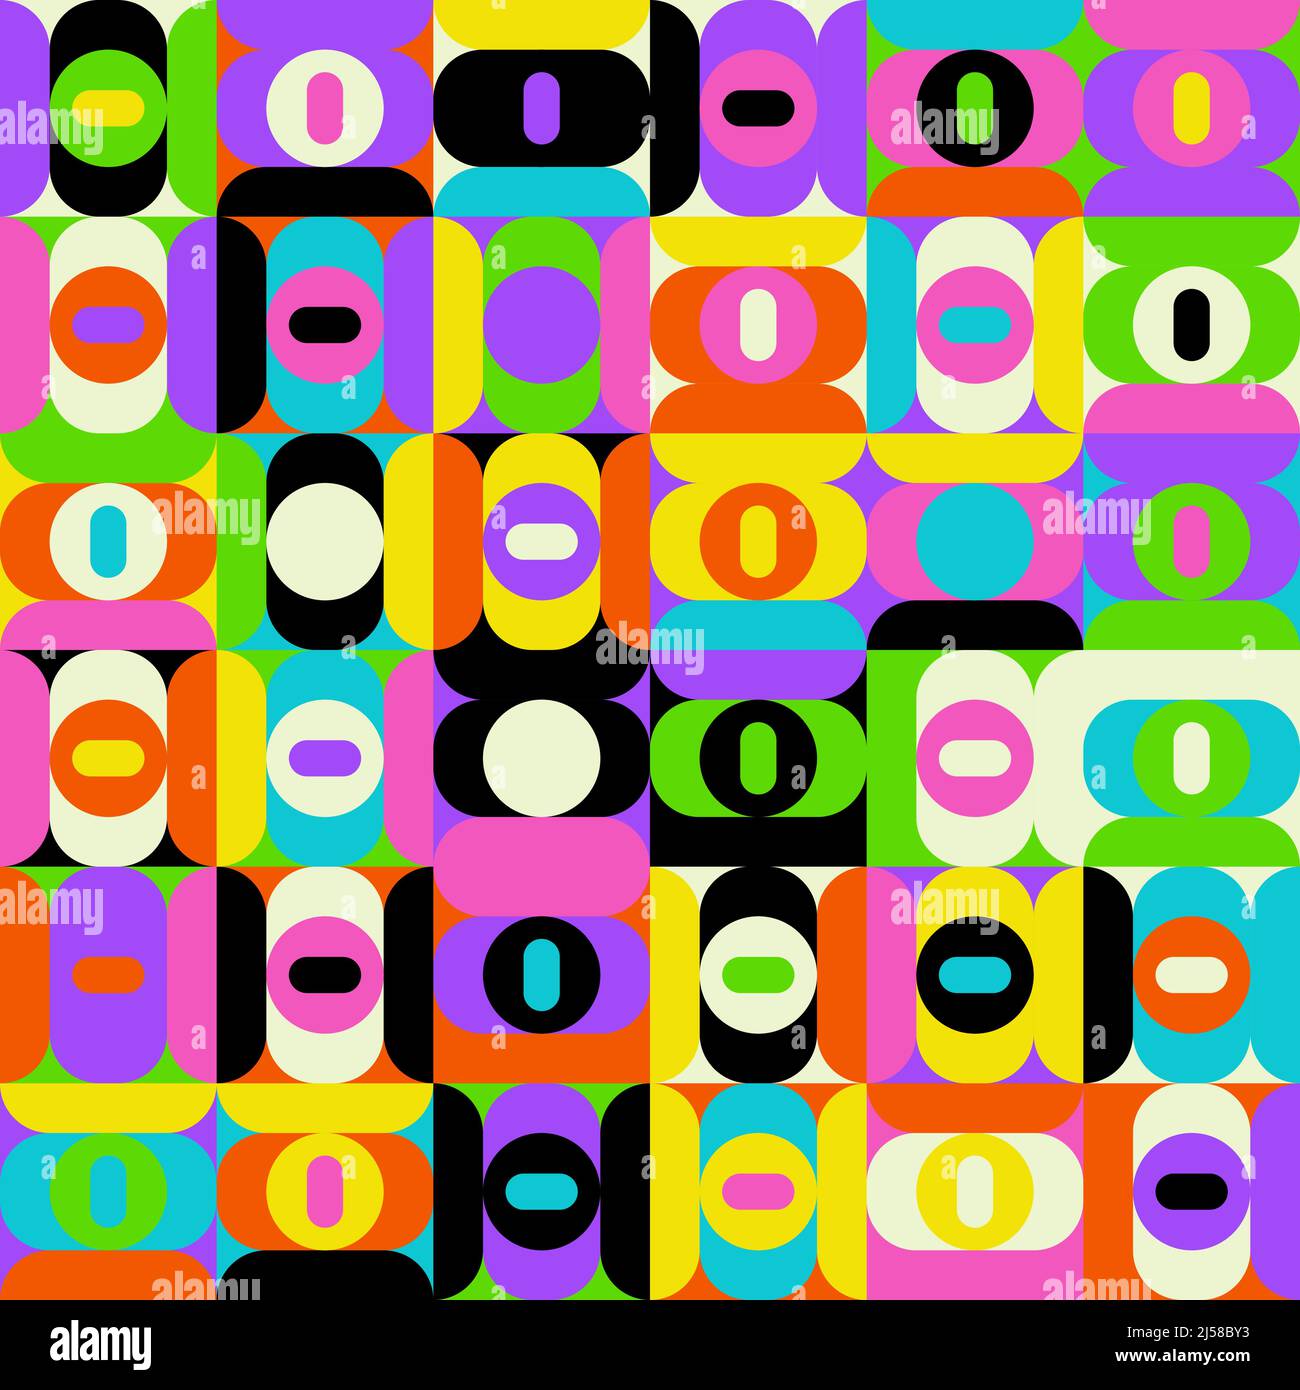 Neonfarbene abstrakte Vektormuster mit verschiedenen geometrischen Formen und Elementen. Digitales Grafikdesign für Poster, Cover, Kunst, Presenta Stock Vektor